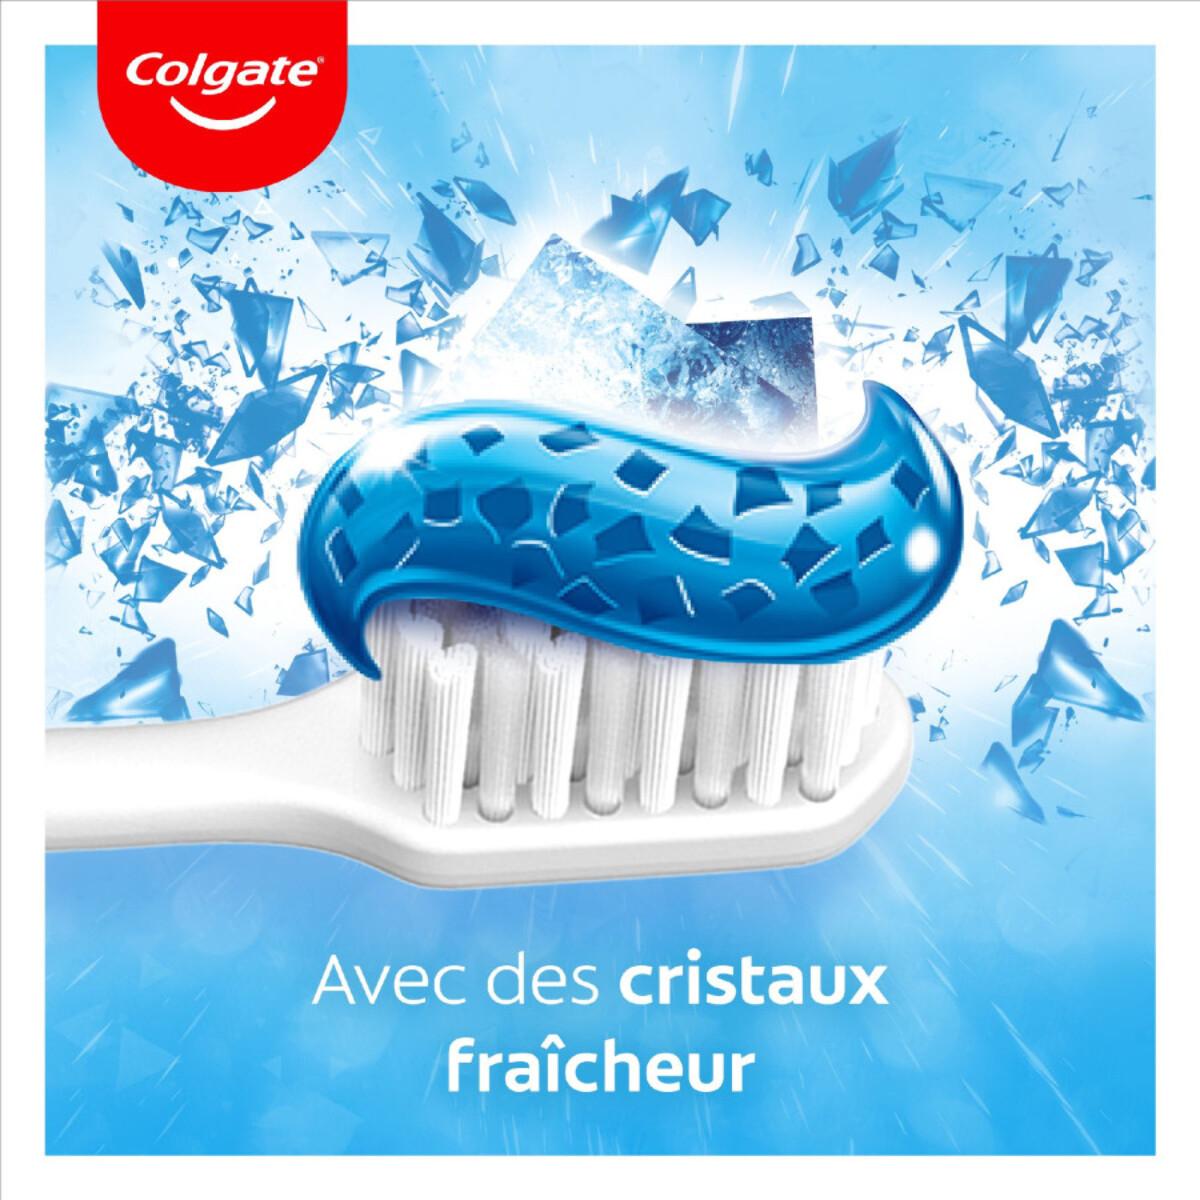 Pack de 2 - Lot de 3 Dentifrices Colgate Max Fresh cristaux blancheur - 75ml